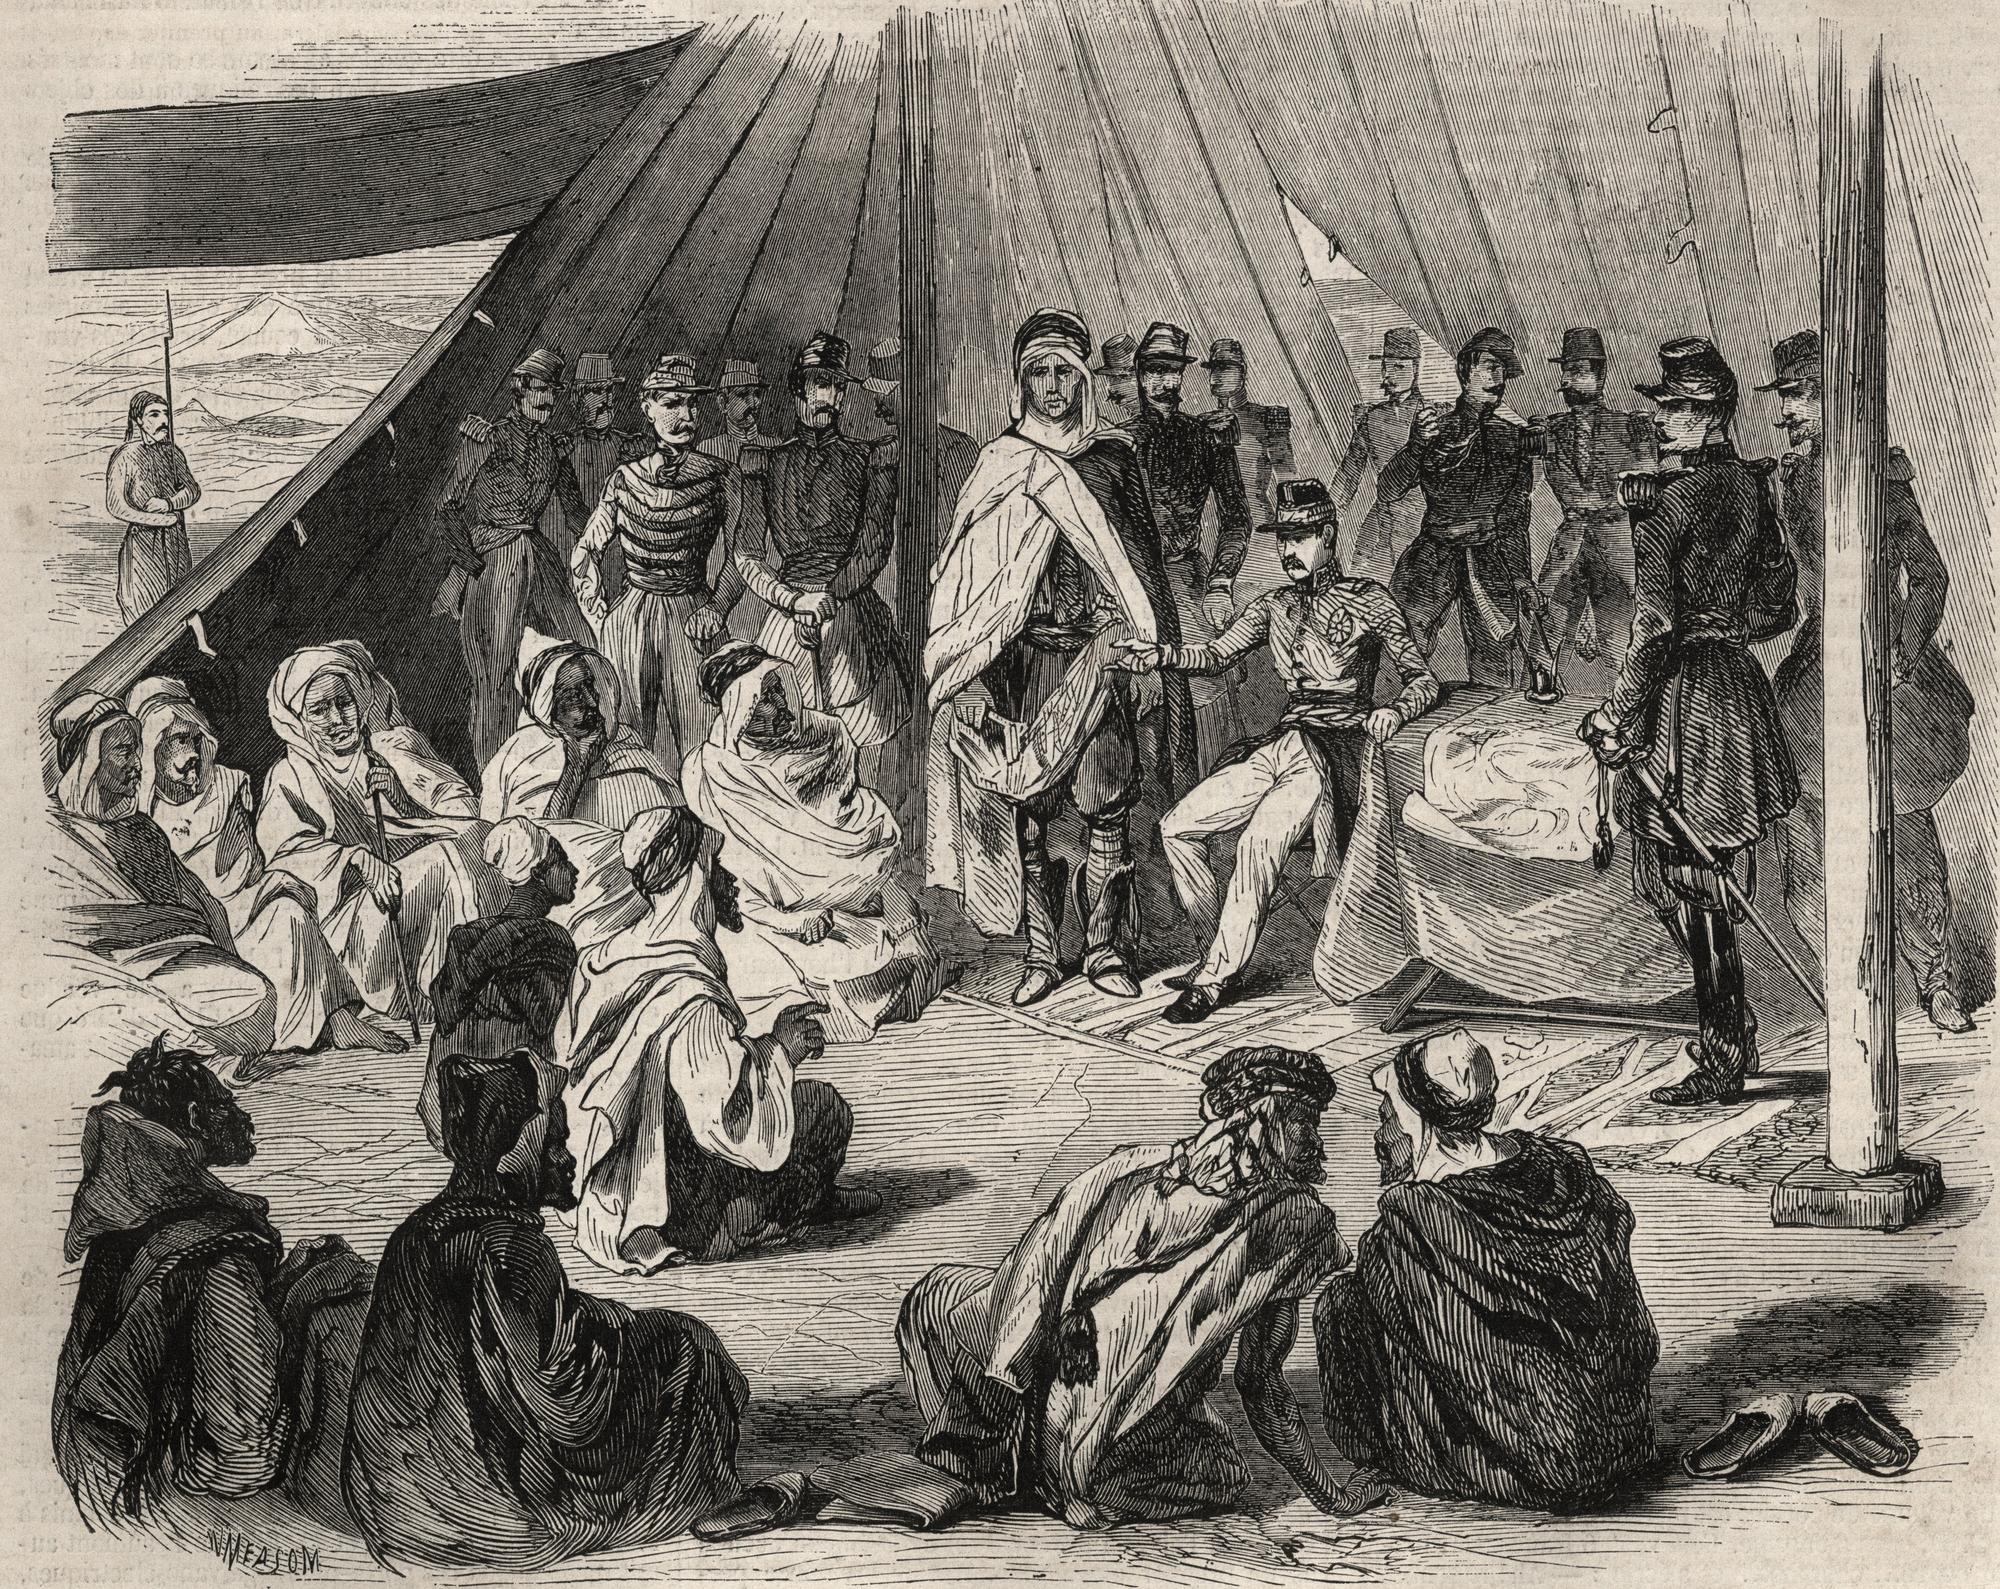 Gravure dans "Le Monde illustré" de 1857 montrant la conquête de l'Algérie: expédition en grande Kabylie en 1857. Soumission de la tribu Kabyle de Beni-Raten par l'armée française. [AFP]